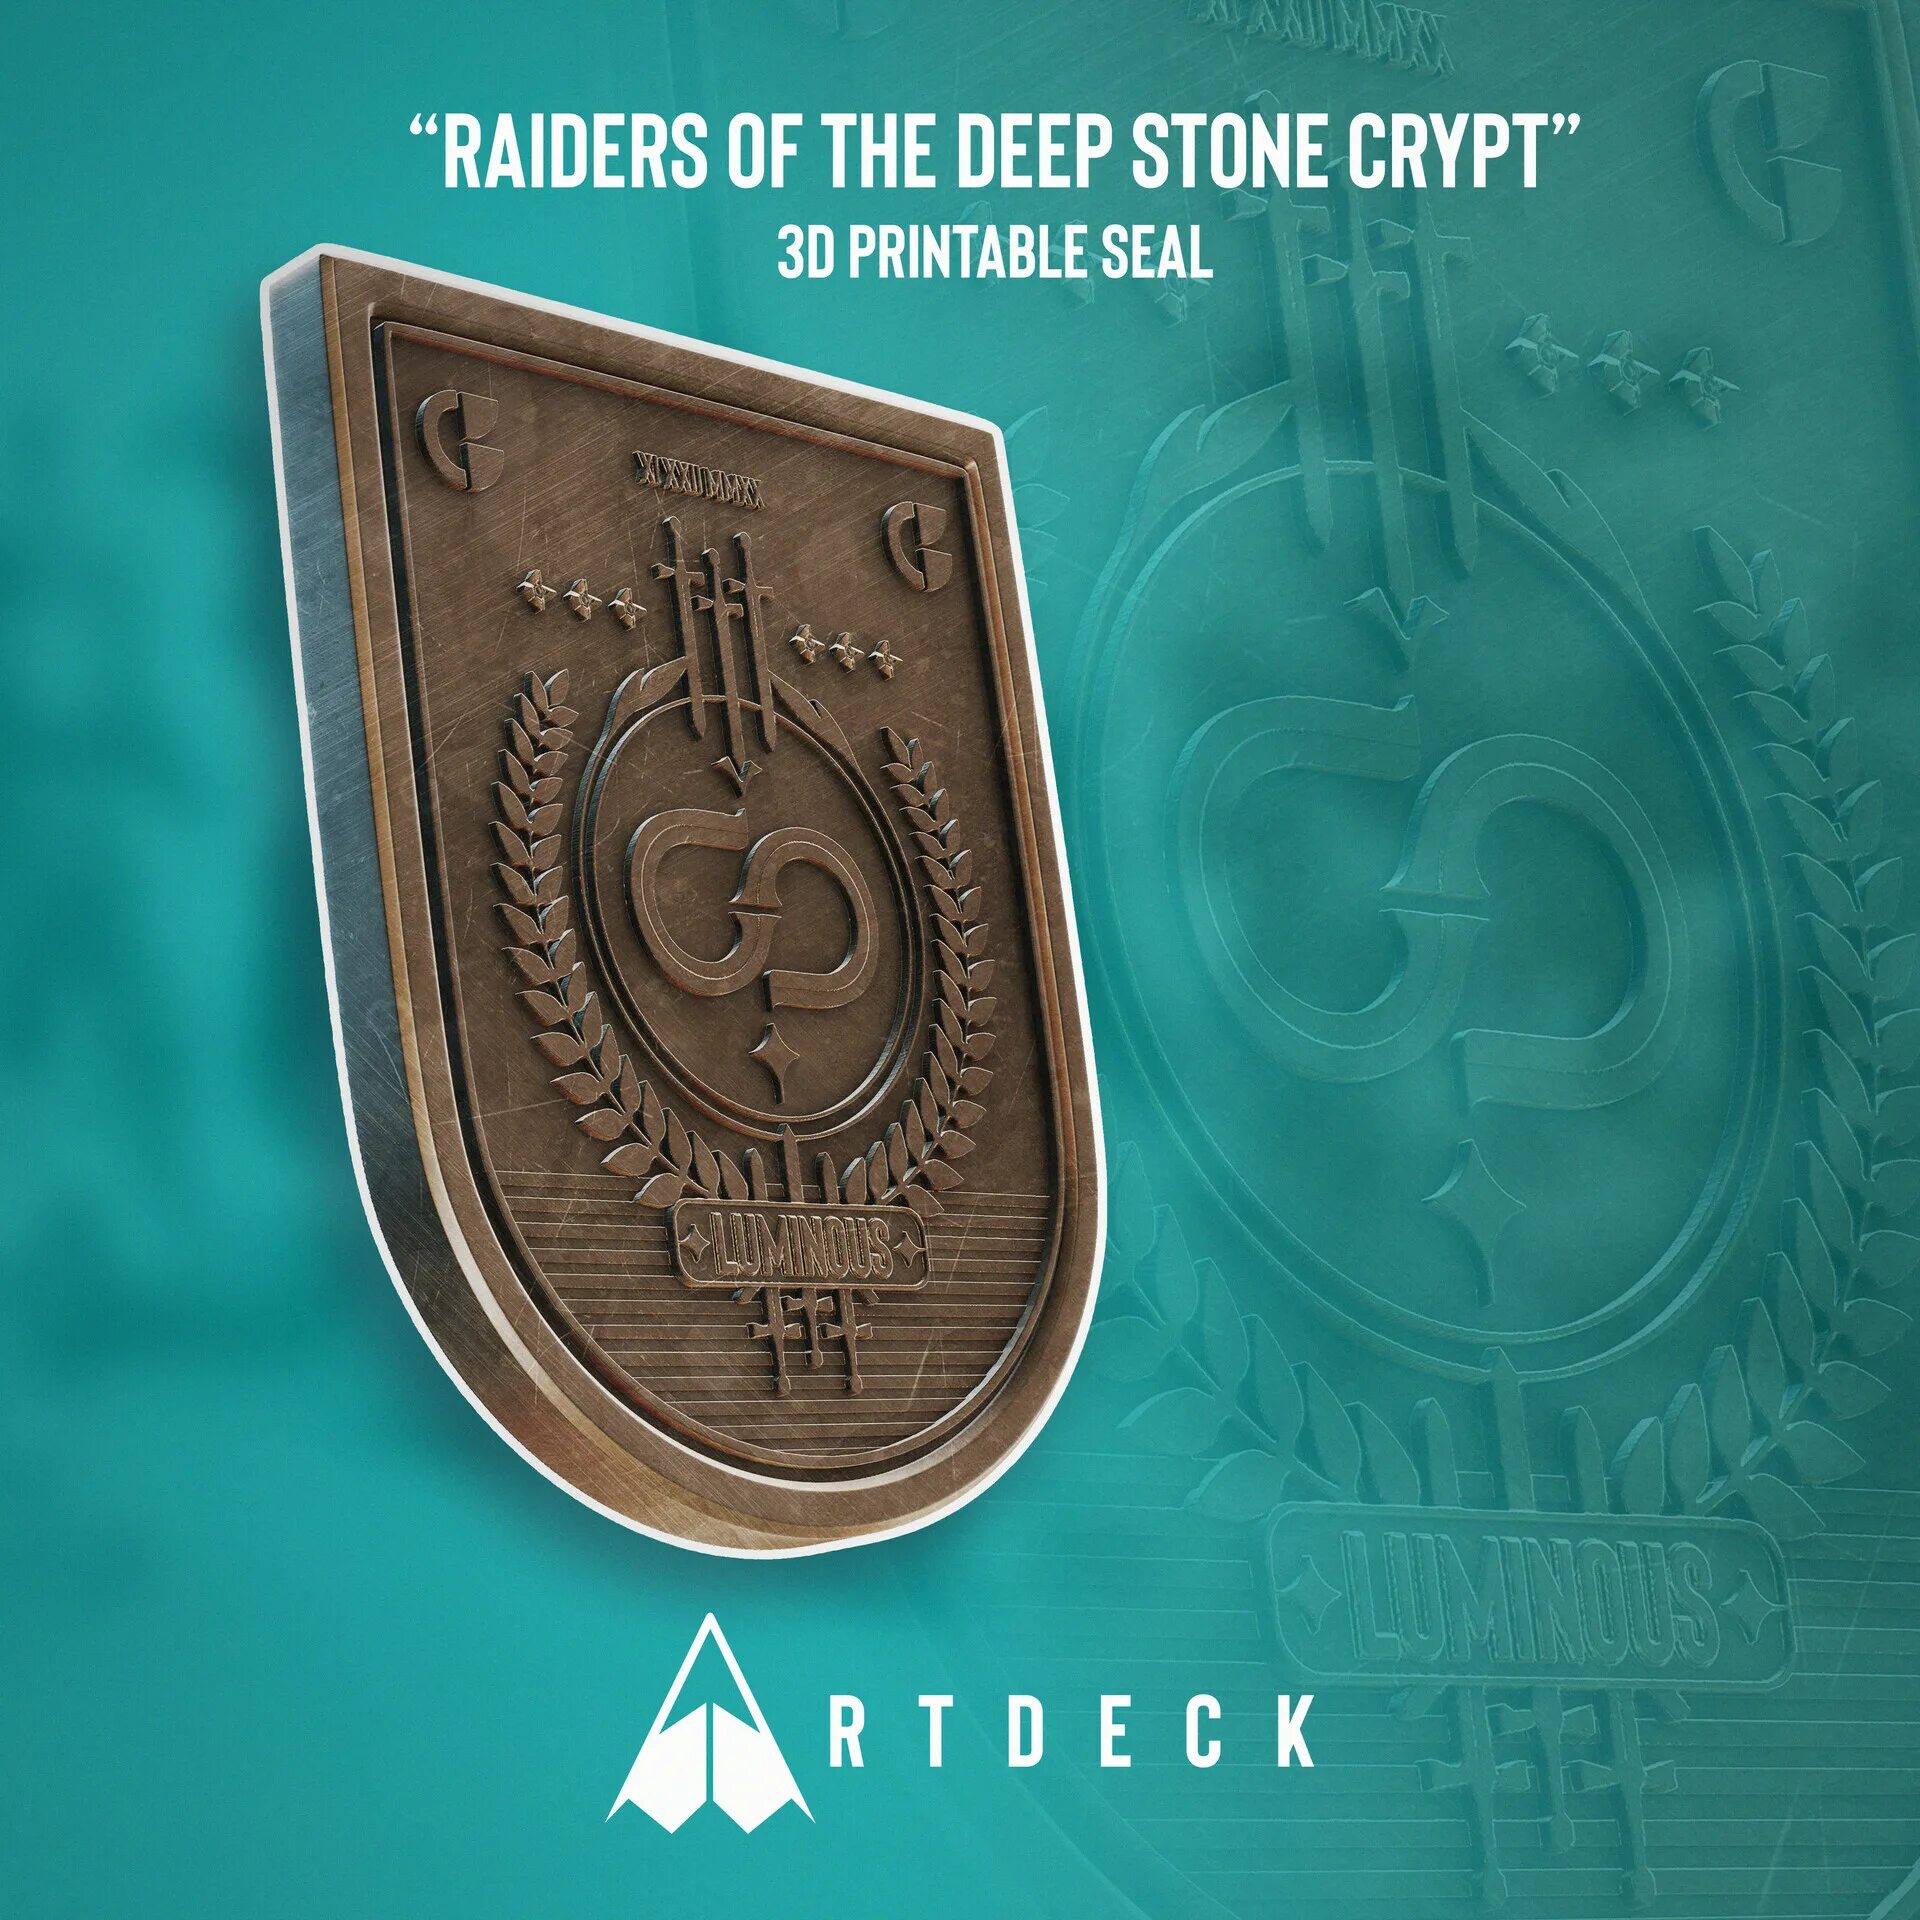 Deep Stone Crypt. Deep Stone Crypt Loot. Deep Stone Crypt Armor. Deep Stone Crypt logo.